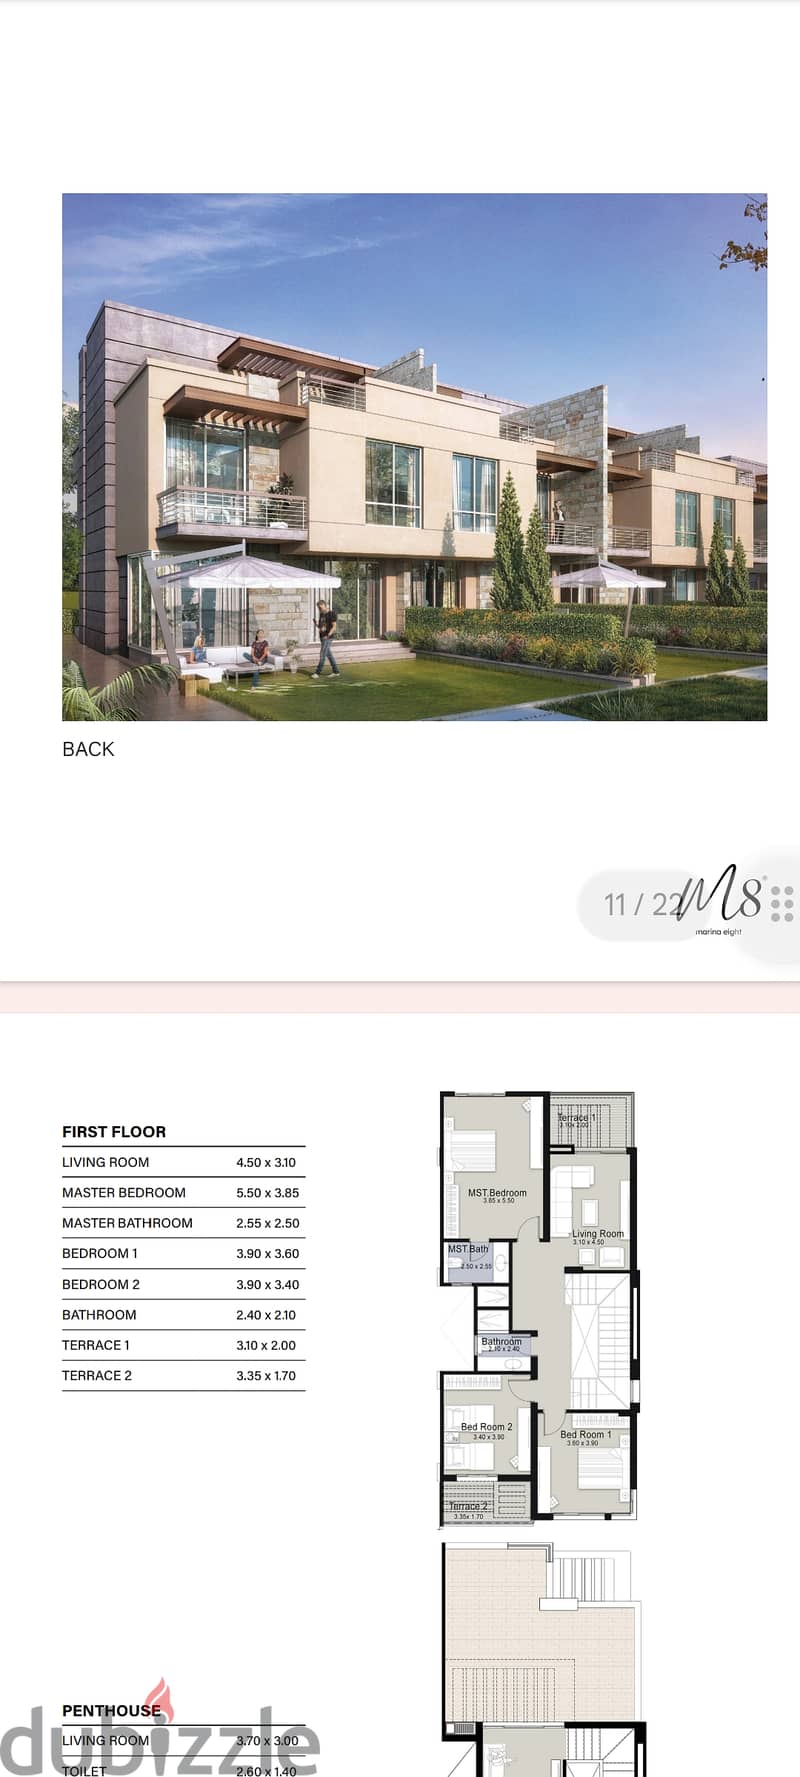 Villa for sale, Marina 8, area 276 meters + roof 70 meters + garden 8